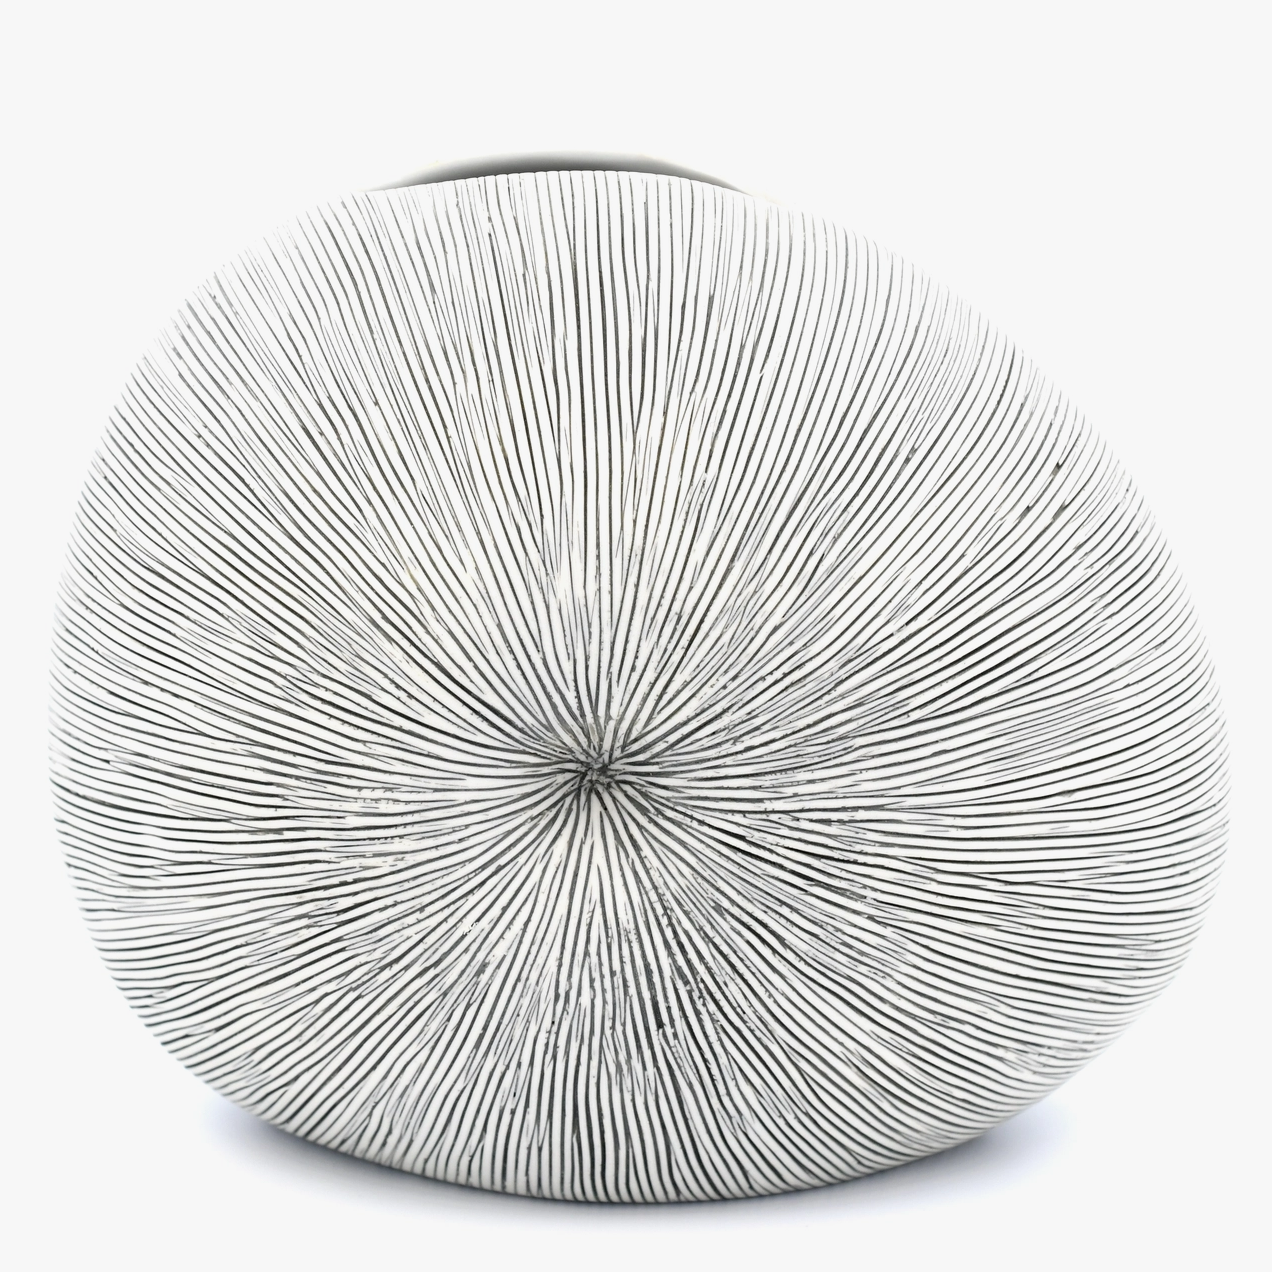 Handmade Seashell Vase, Medium, Gray